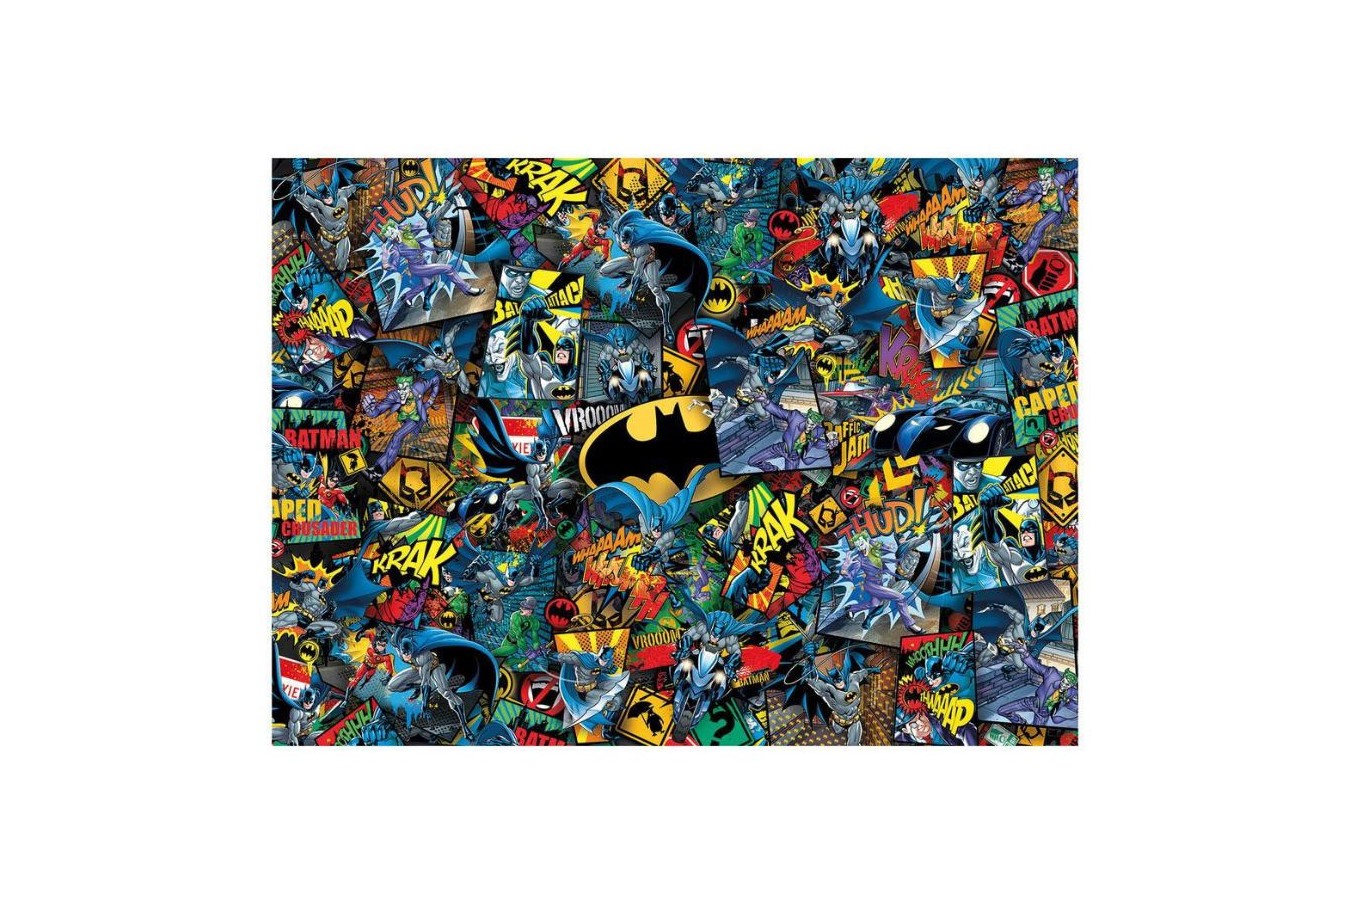 Puzzle 1000 piese dificile Clementoni - Impossible Puzzle - Batman (Clementoni-39575)